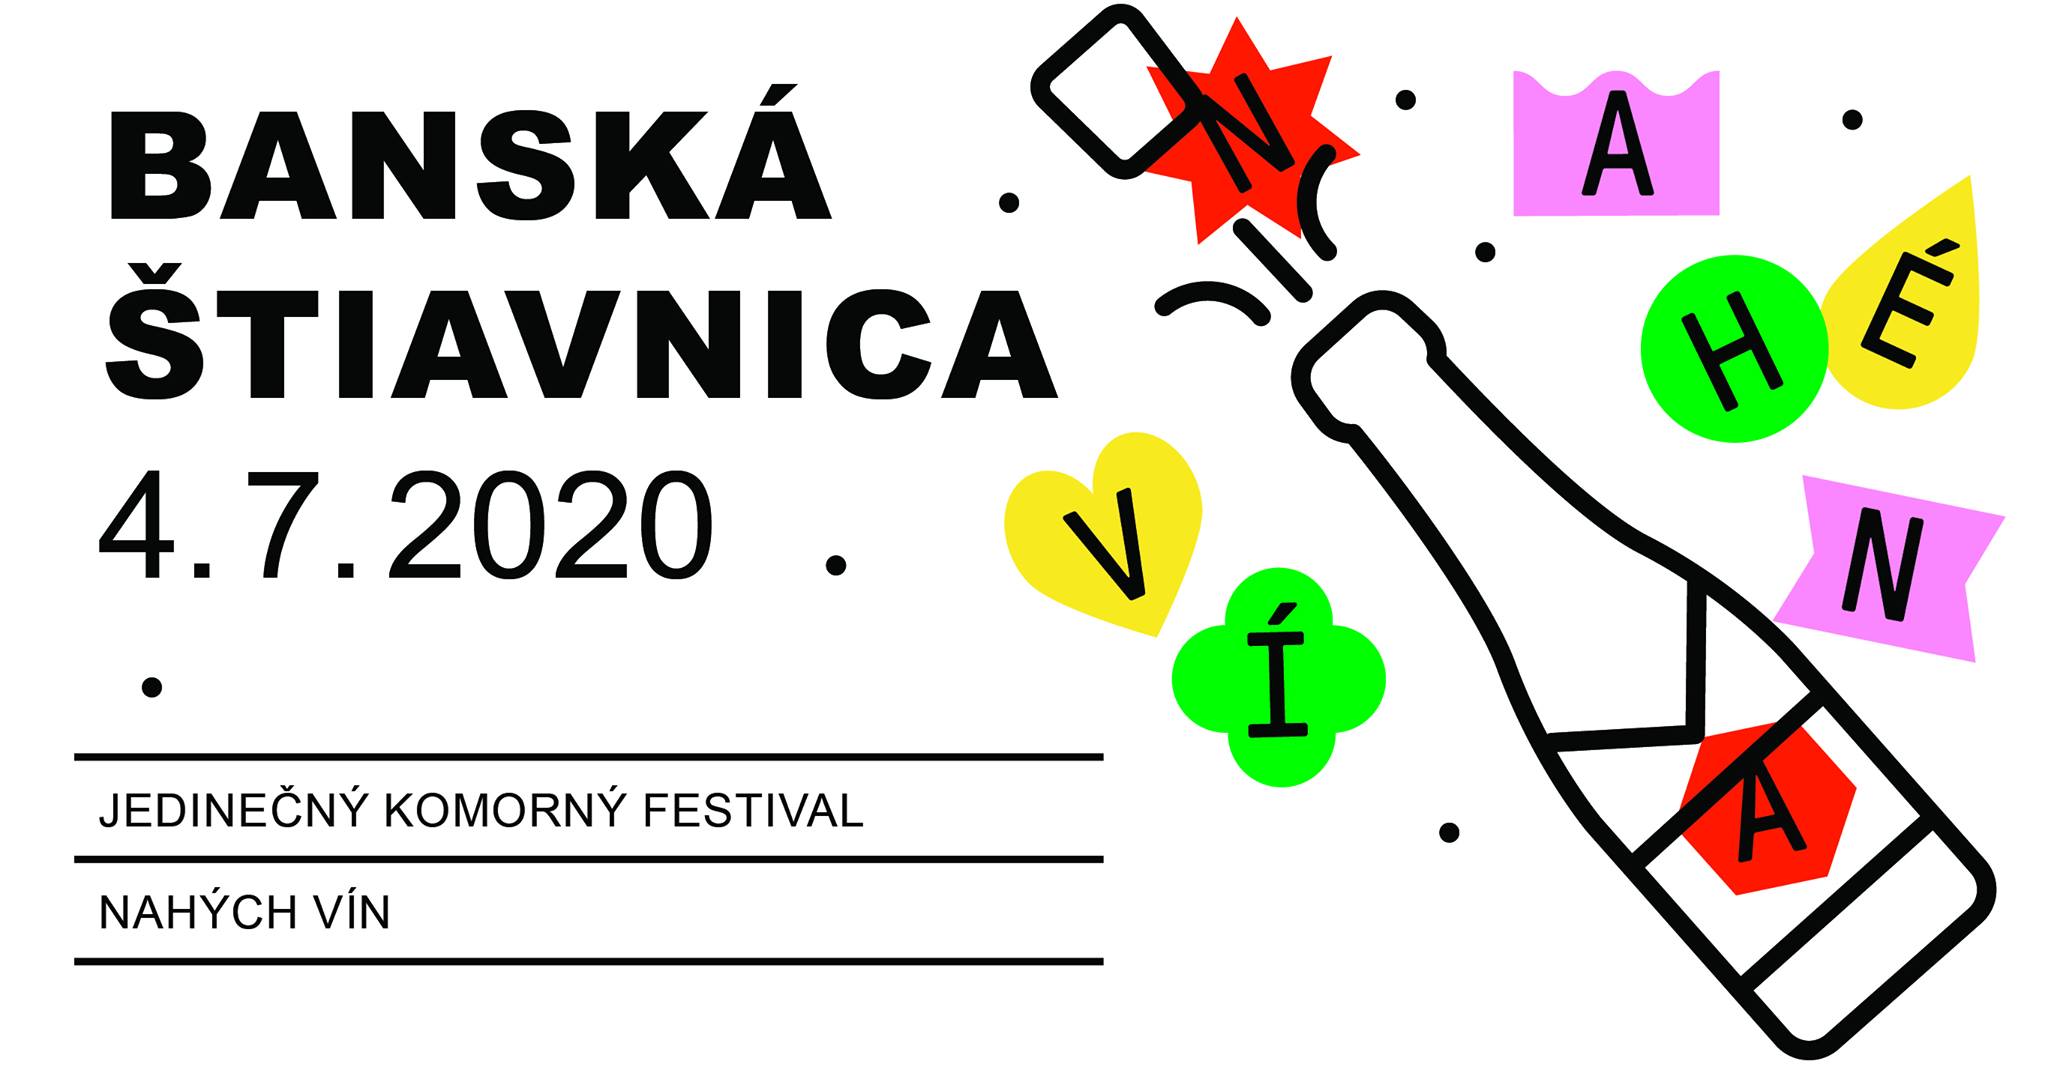 NOV - - - Festival nah vna 2020 Bansk tiavnica